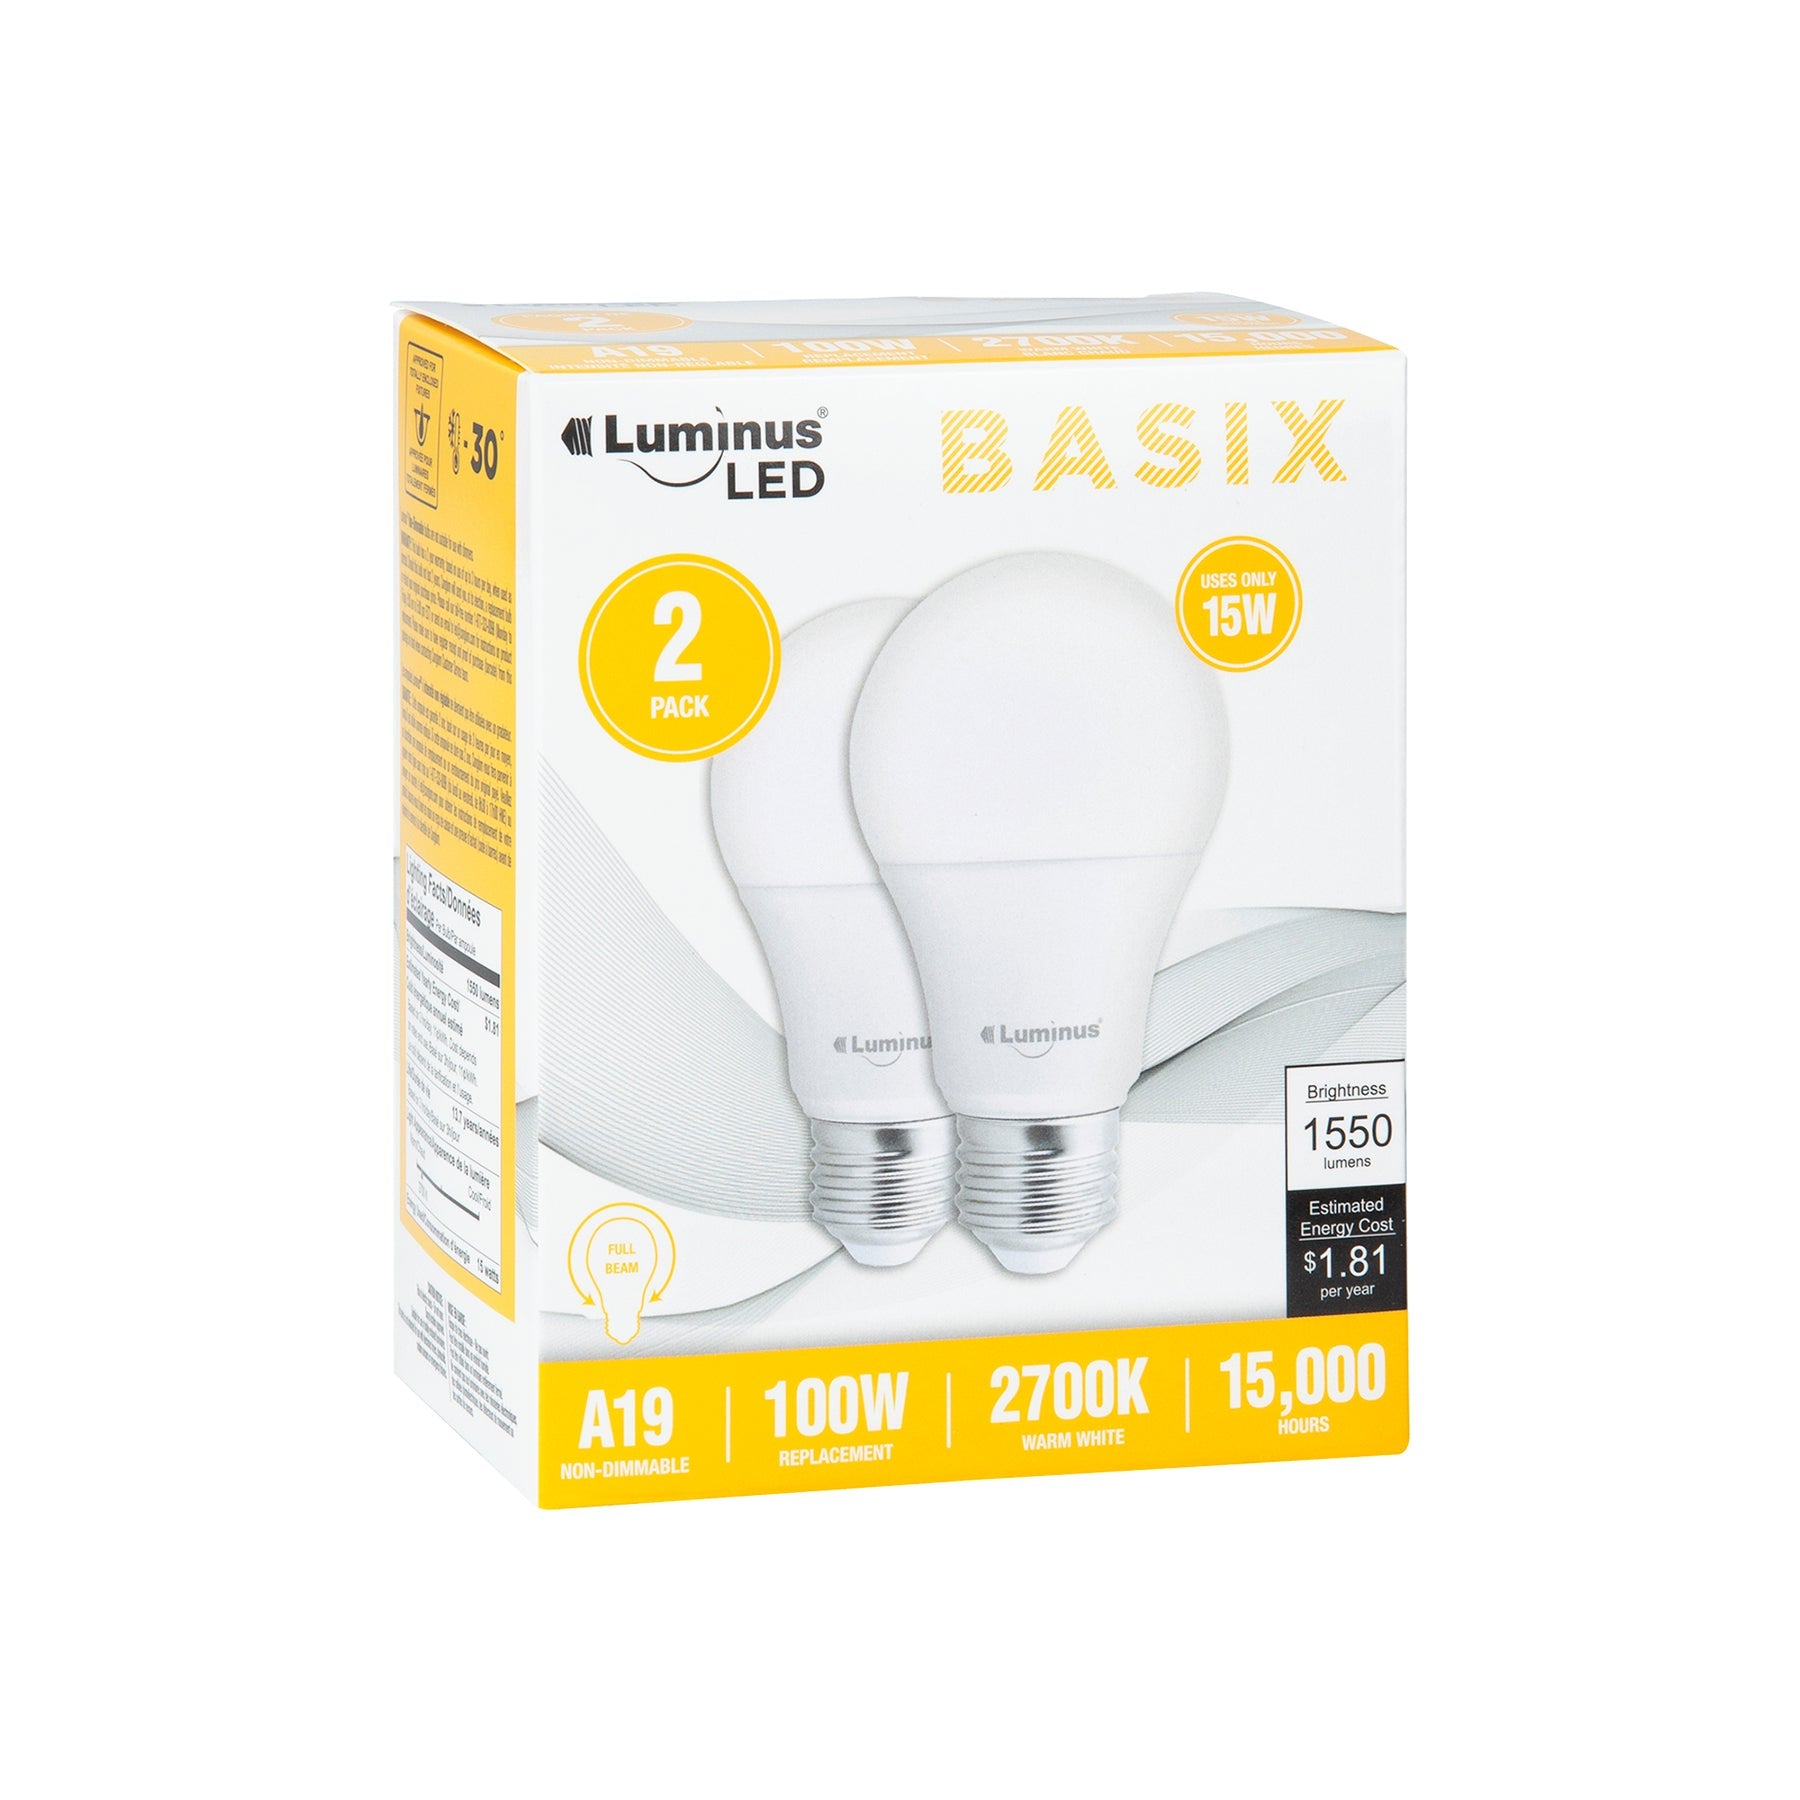 Luminus Led Basix 2pcs Light Bulbs Warm White A19 2700K